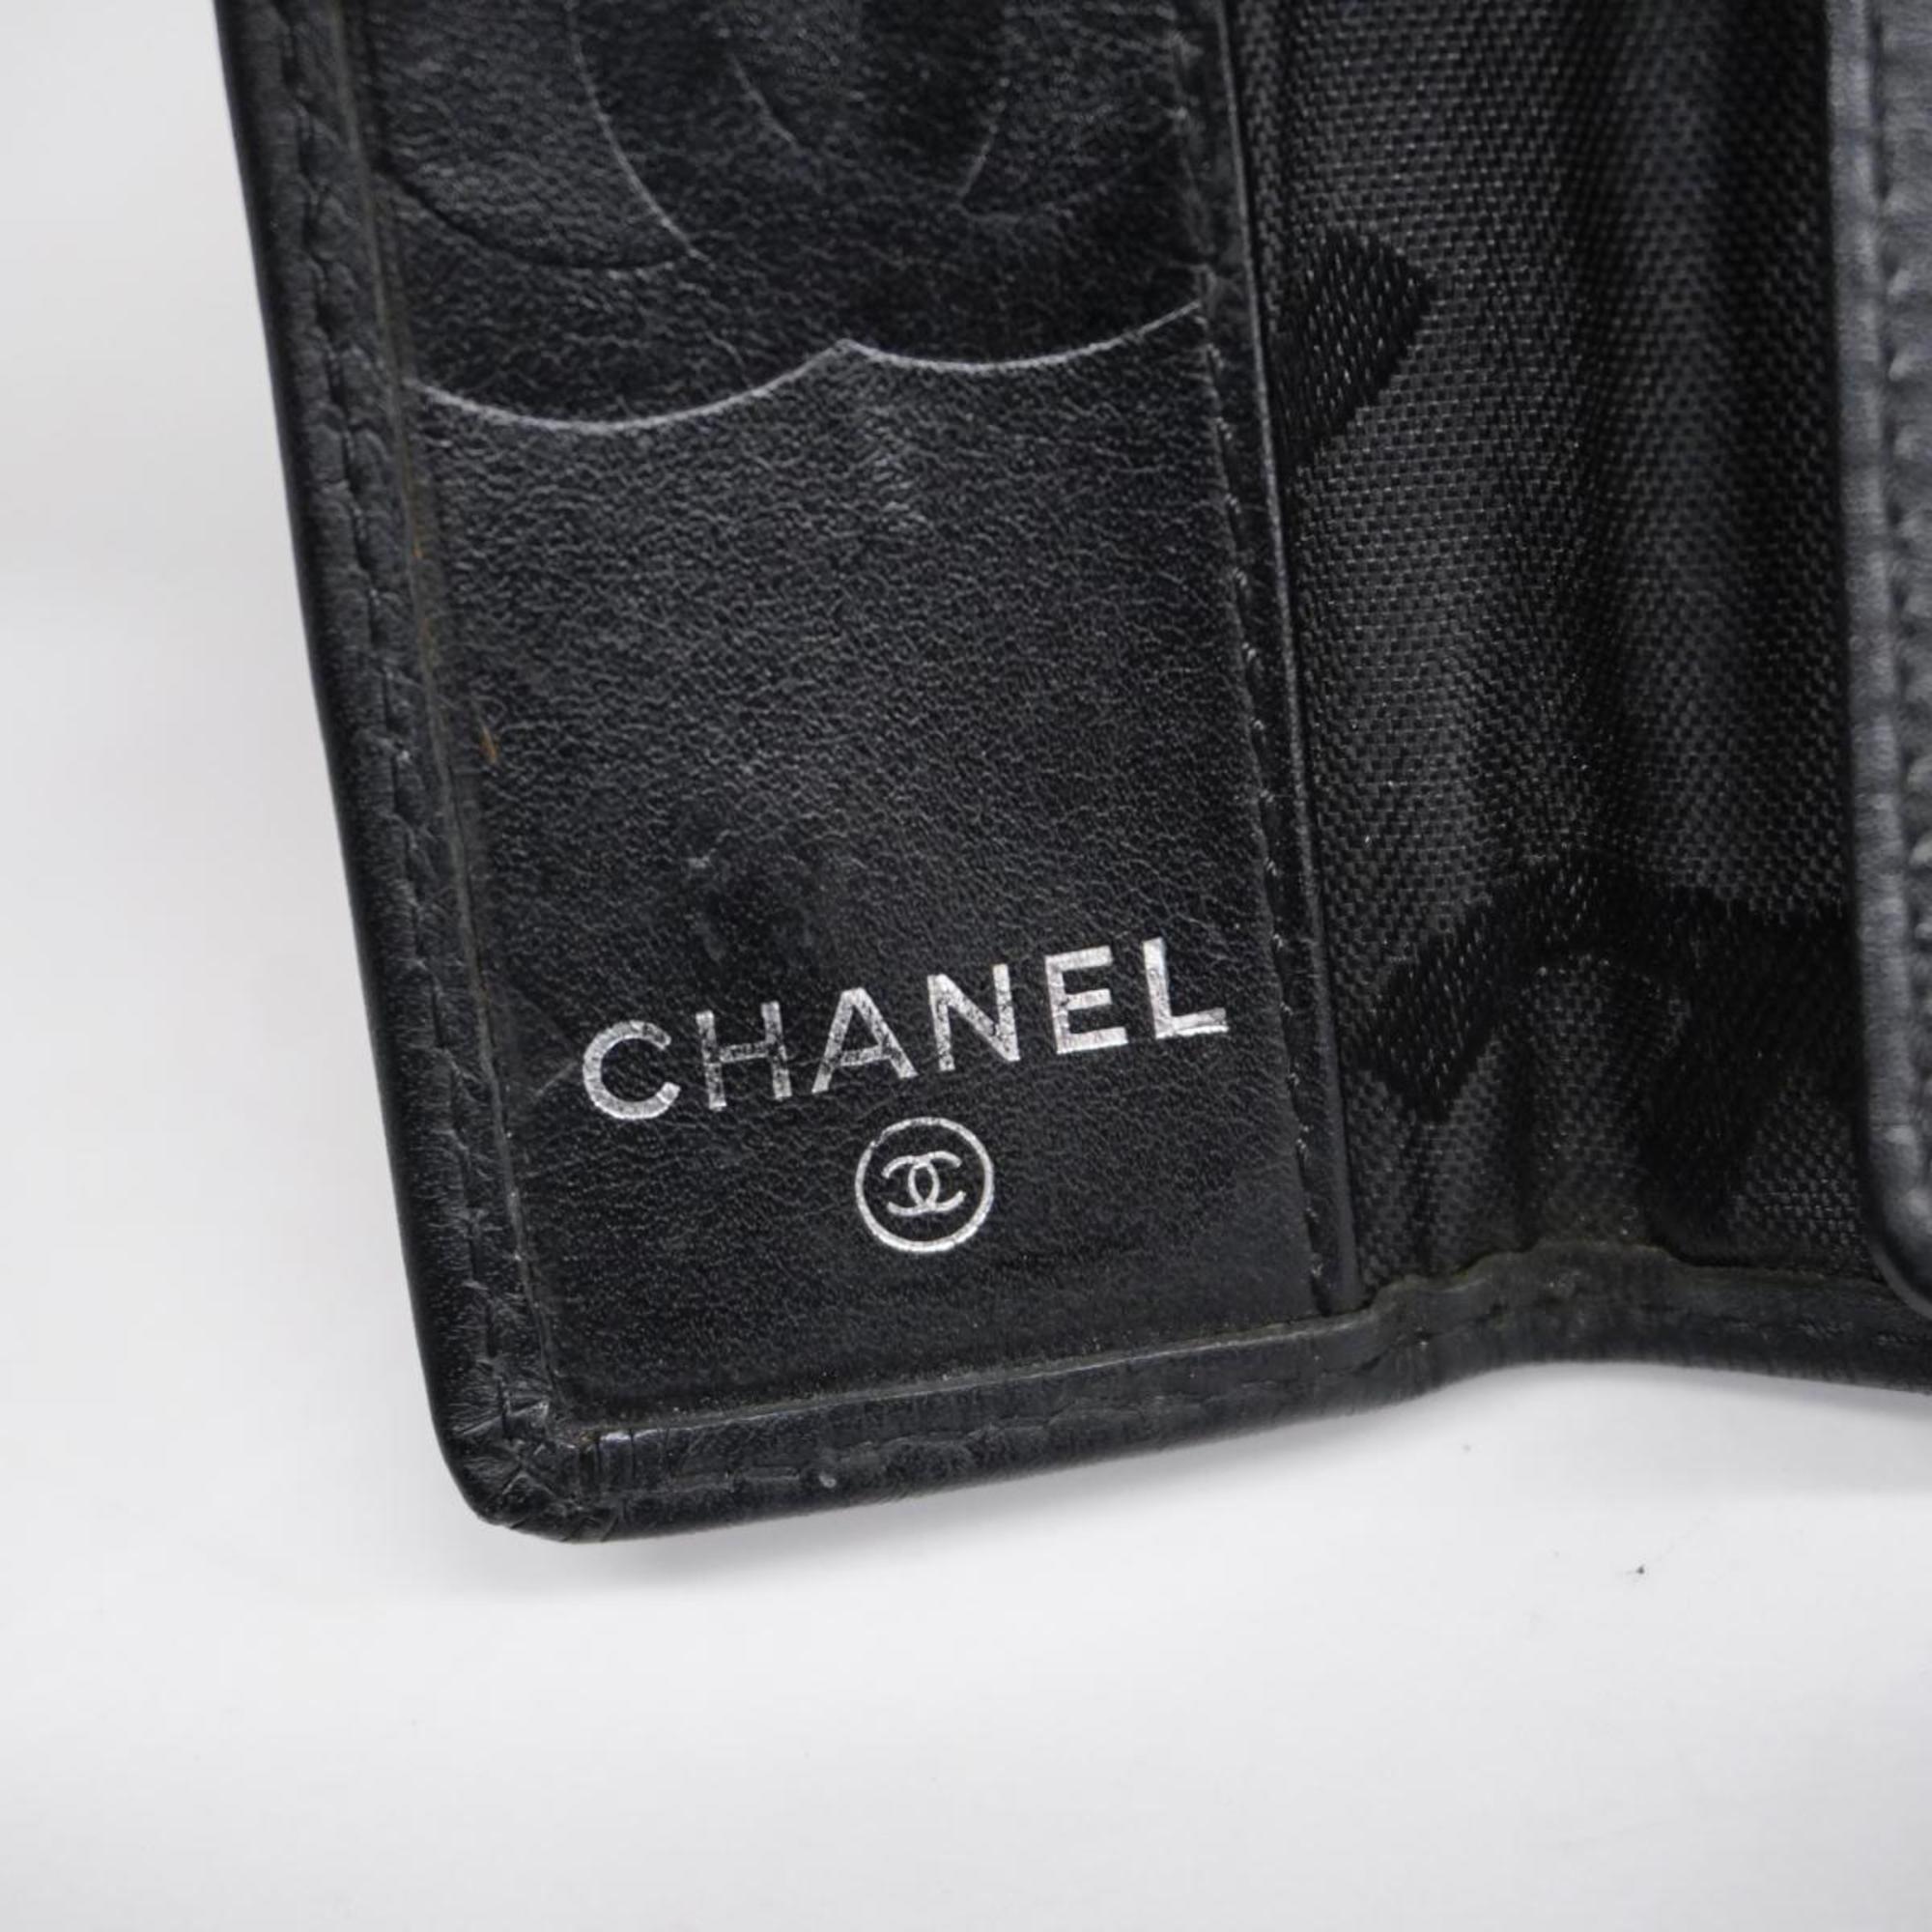 シャネル(Chanel) シャネル キーケース カンボン ラムスキン パテント